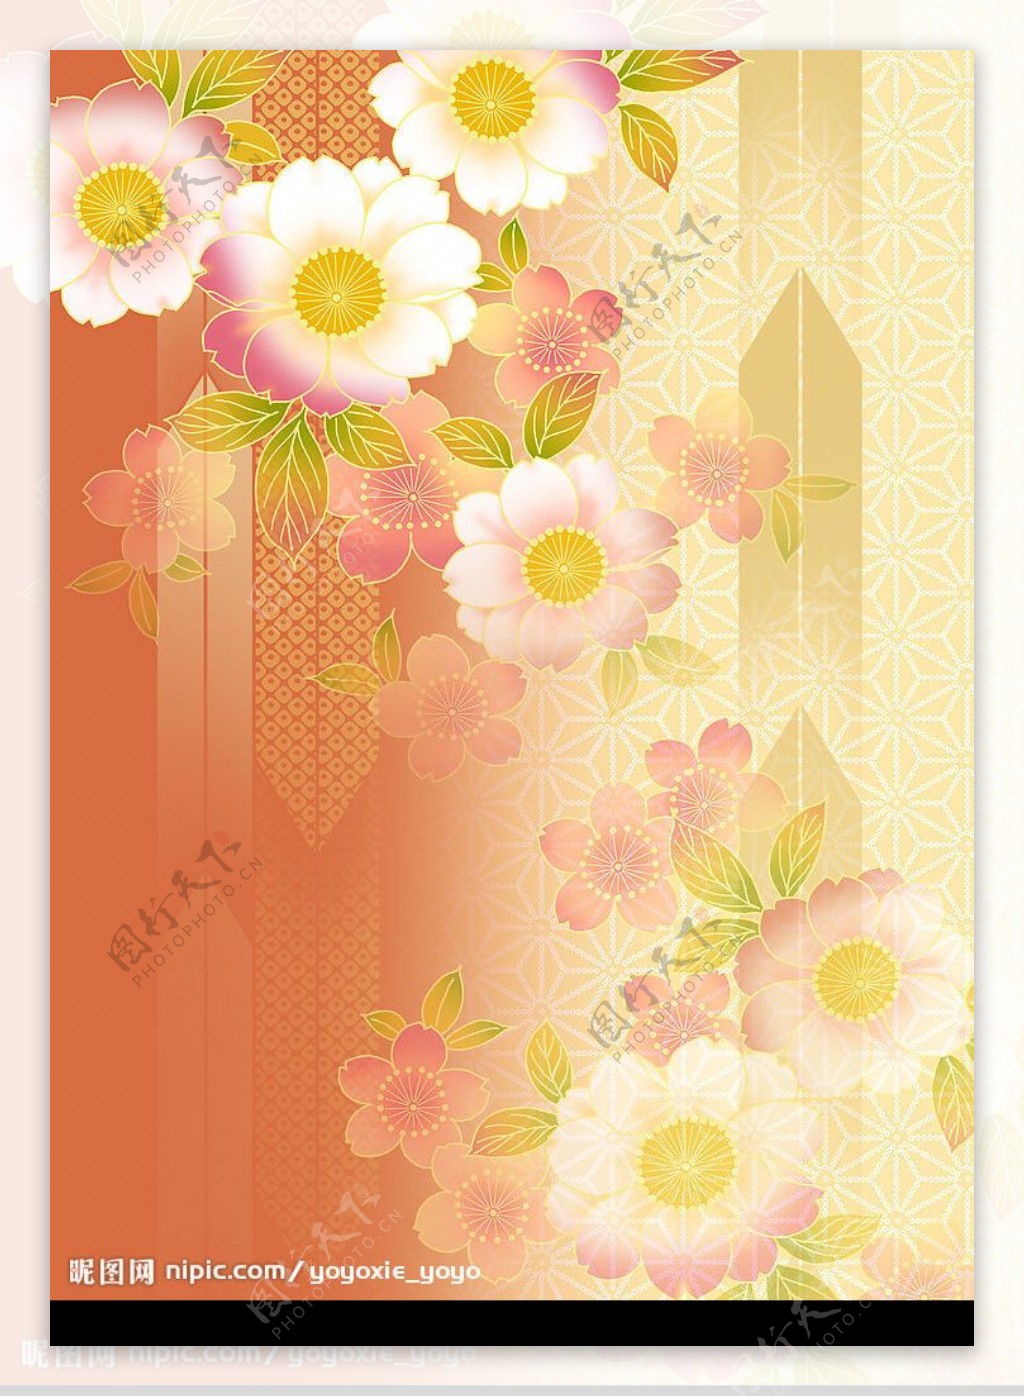 樱花日本风格经典底纹图片